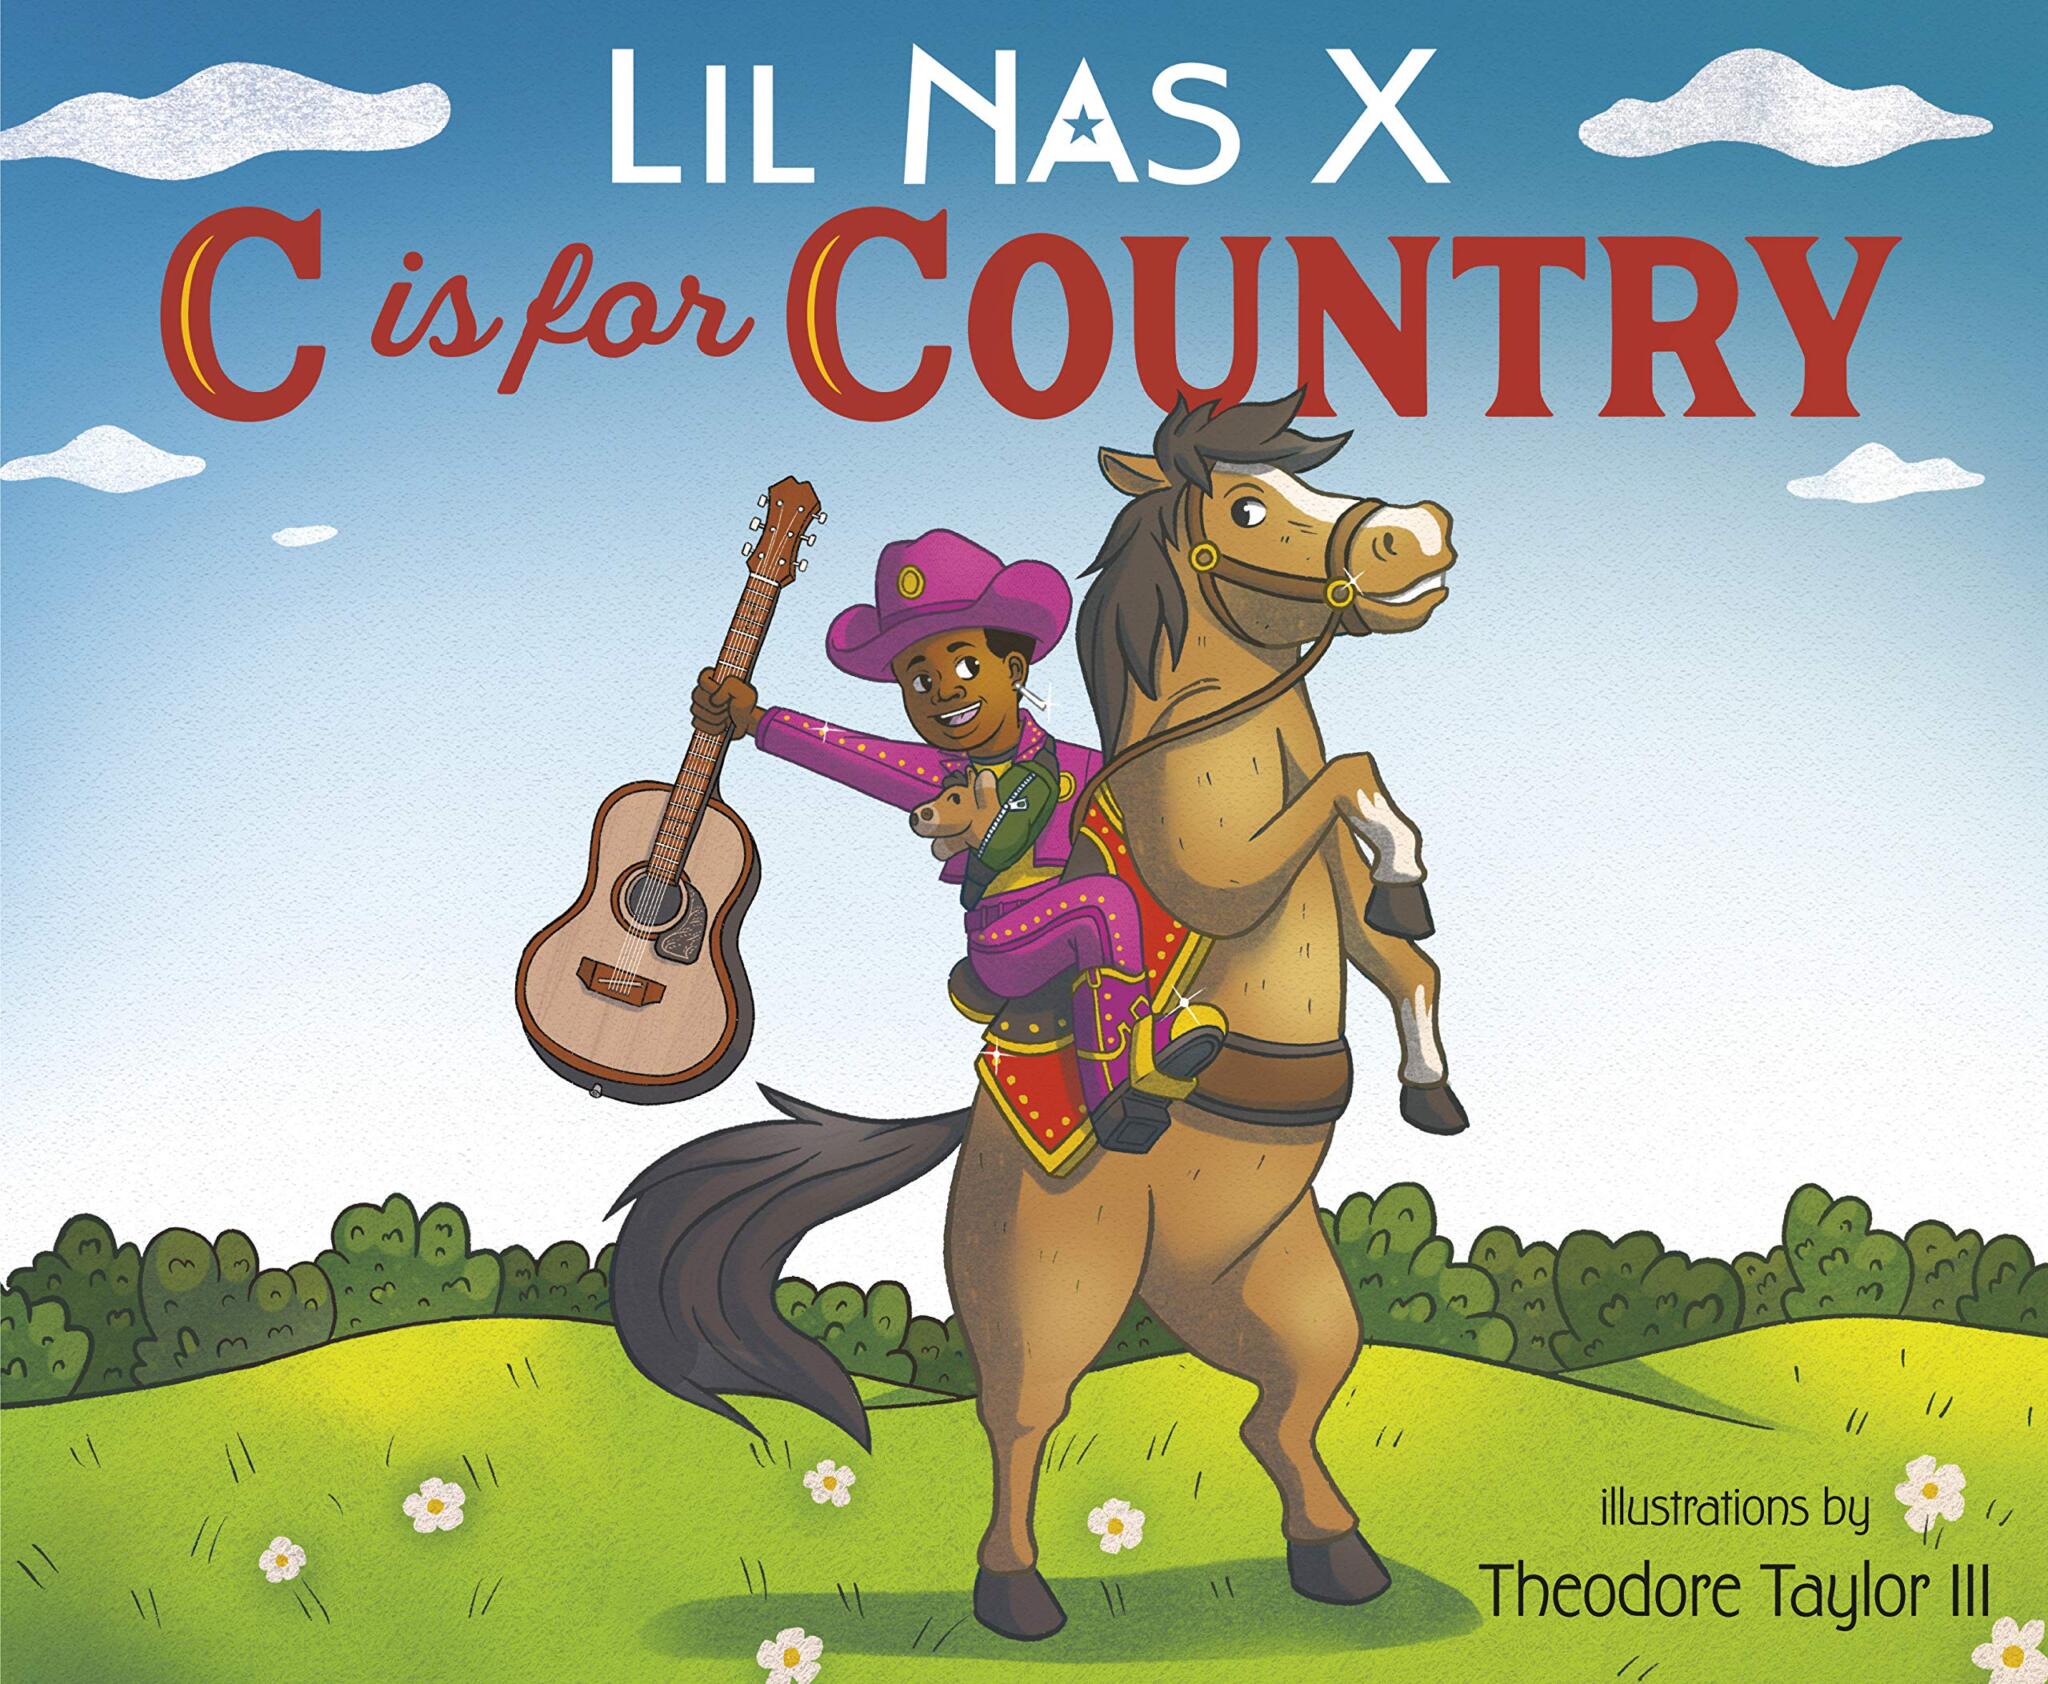 , “C is for Country”: livro infantil de Lil Nas X é um dos mais vendidos nos Estados Unidos